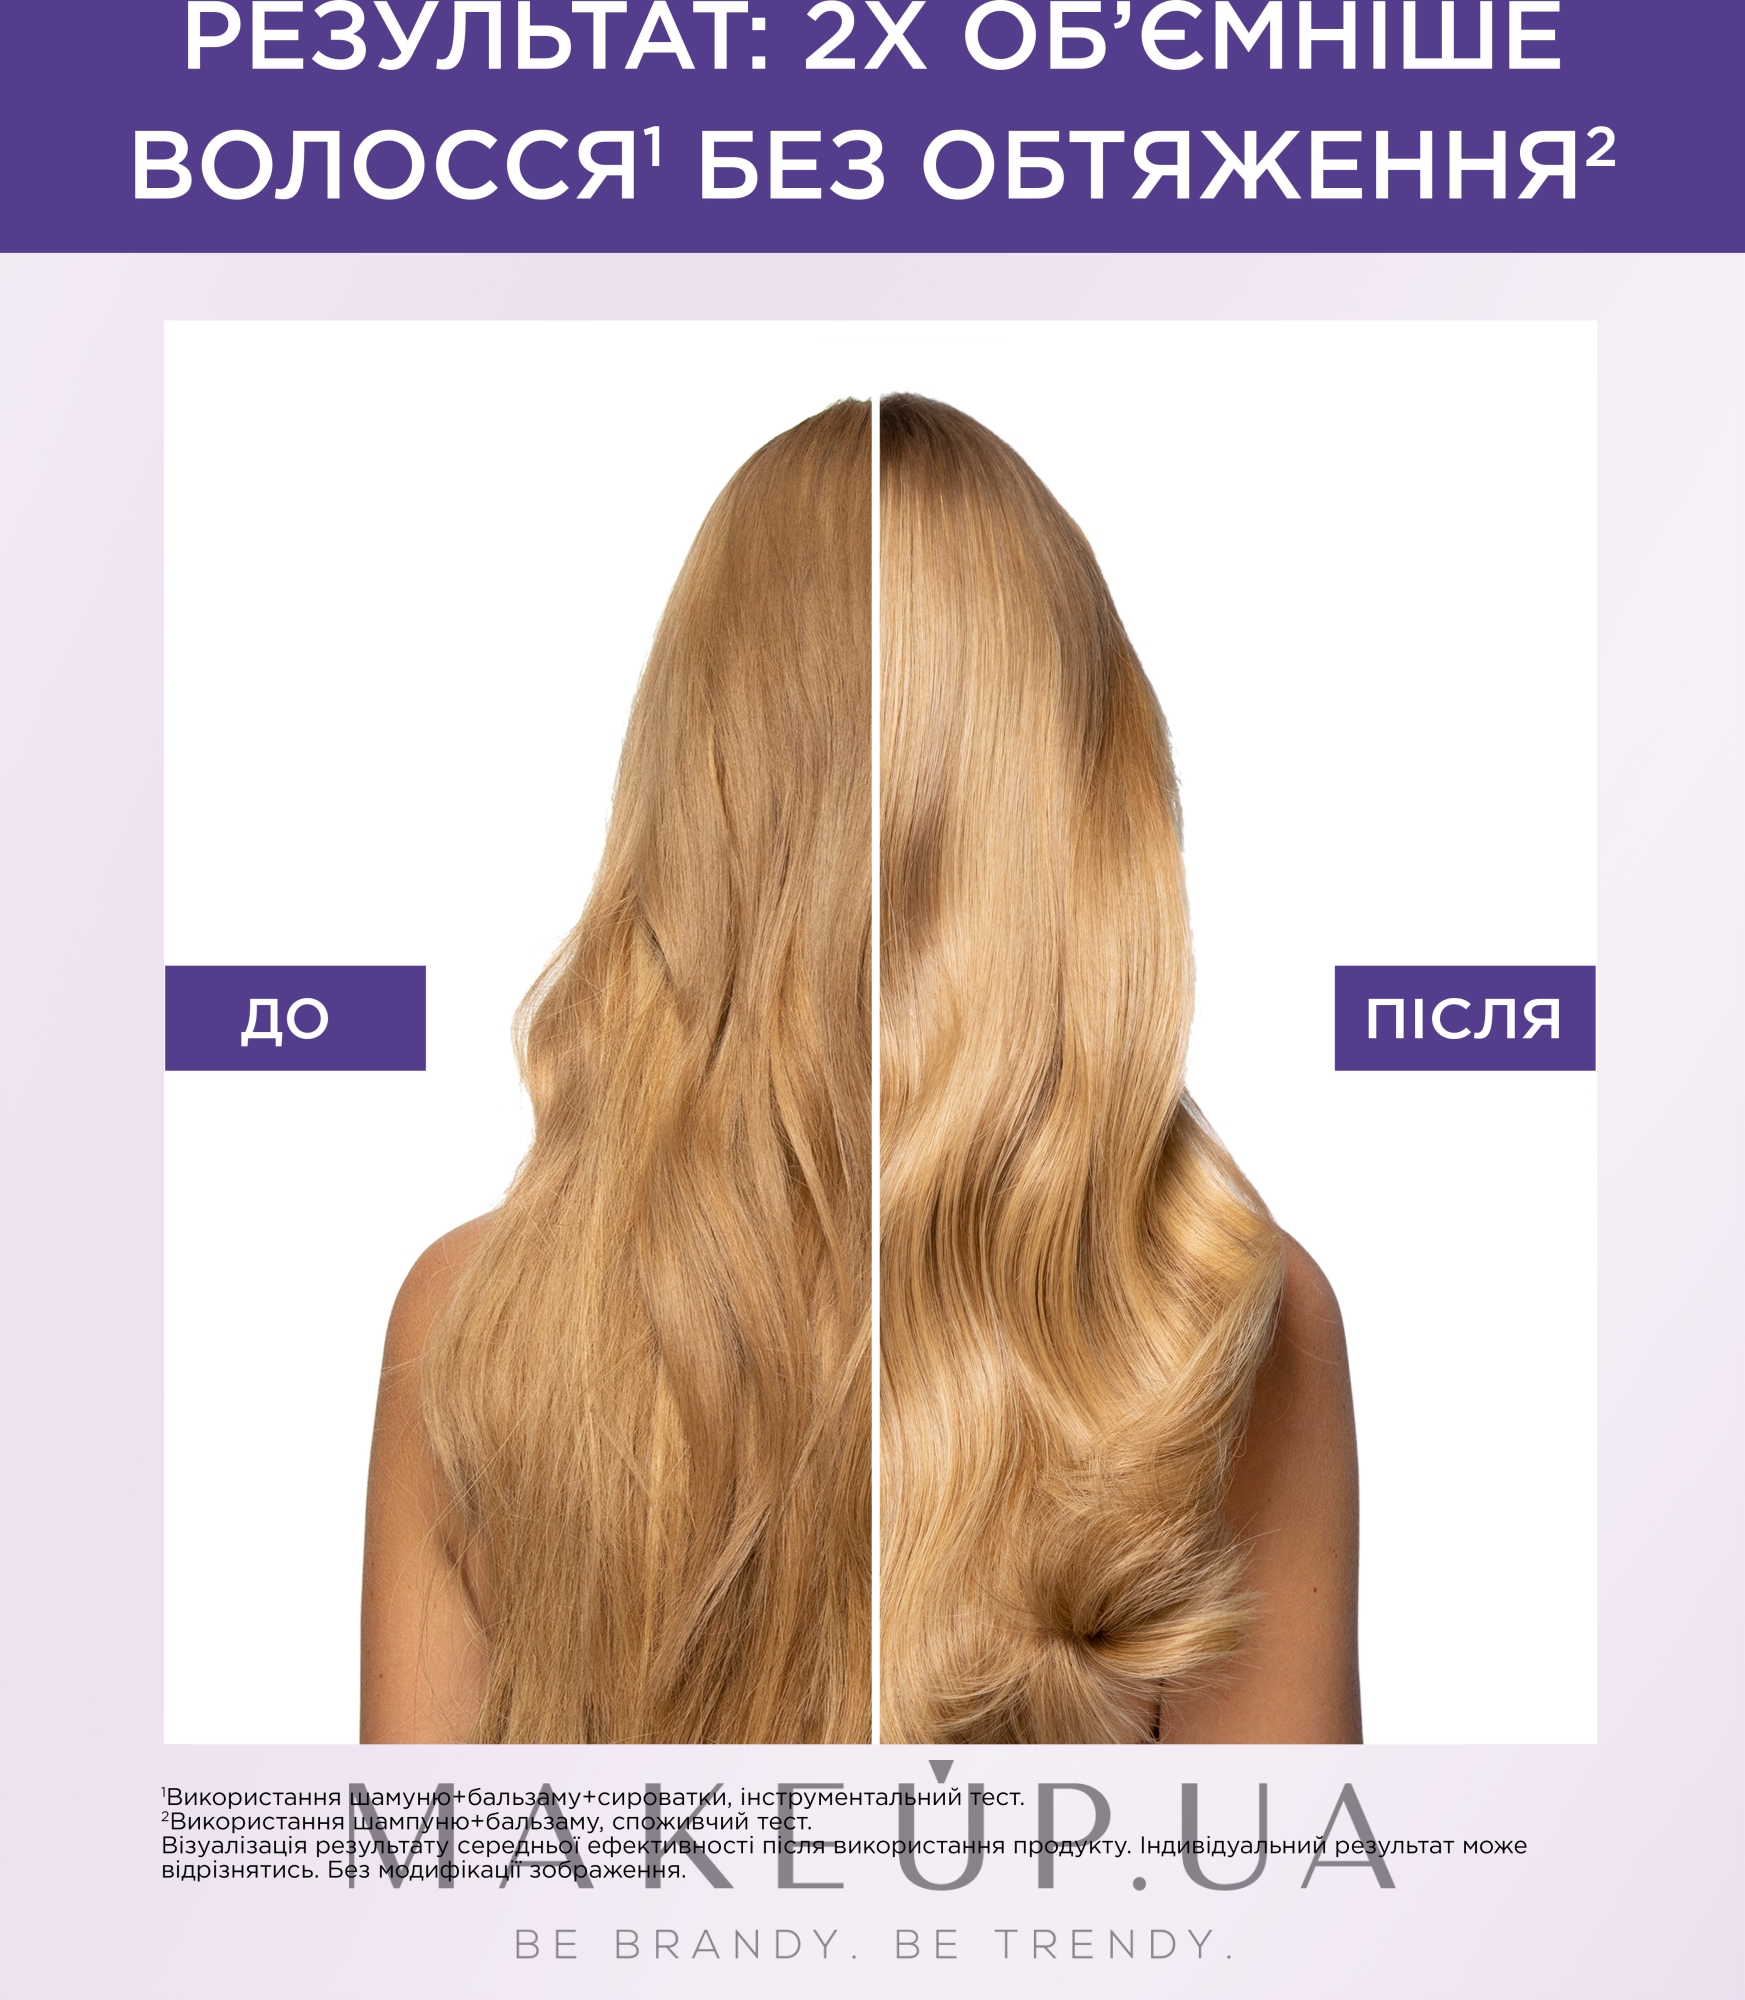 Бальзам-філер з гіалуроновою кислотою для волосся, яке потребує зволоження й об'єму